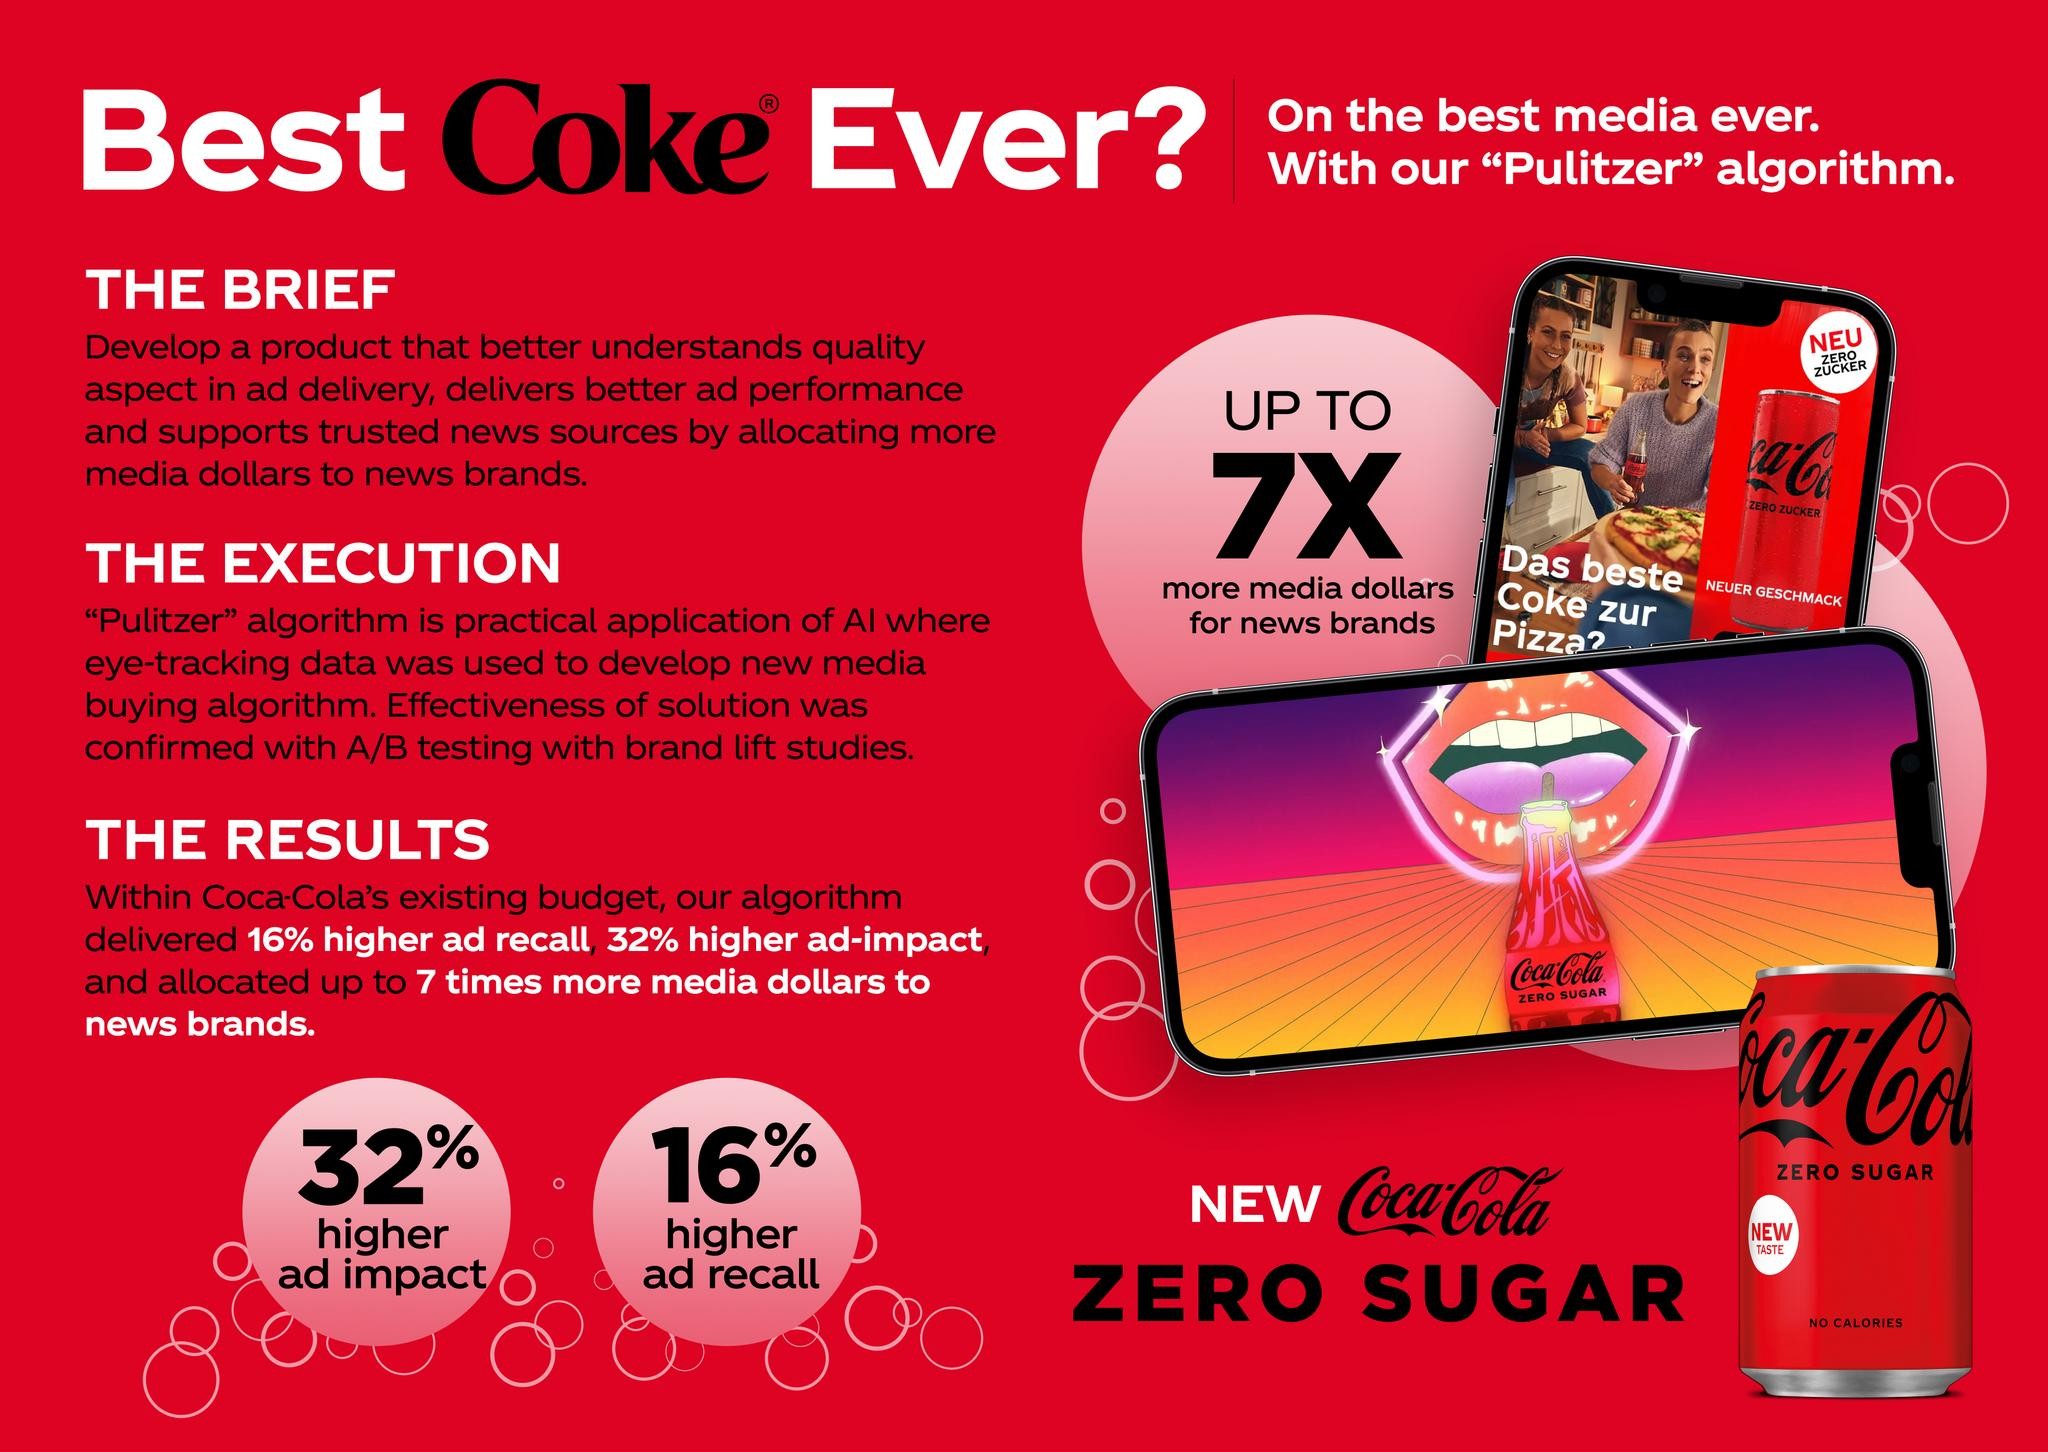 Coca-Cola: Pulitzer Algorithm